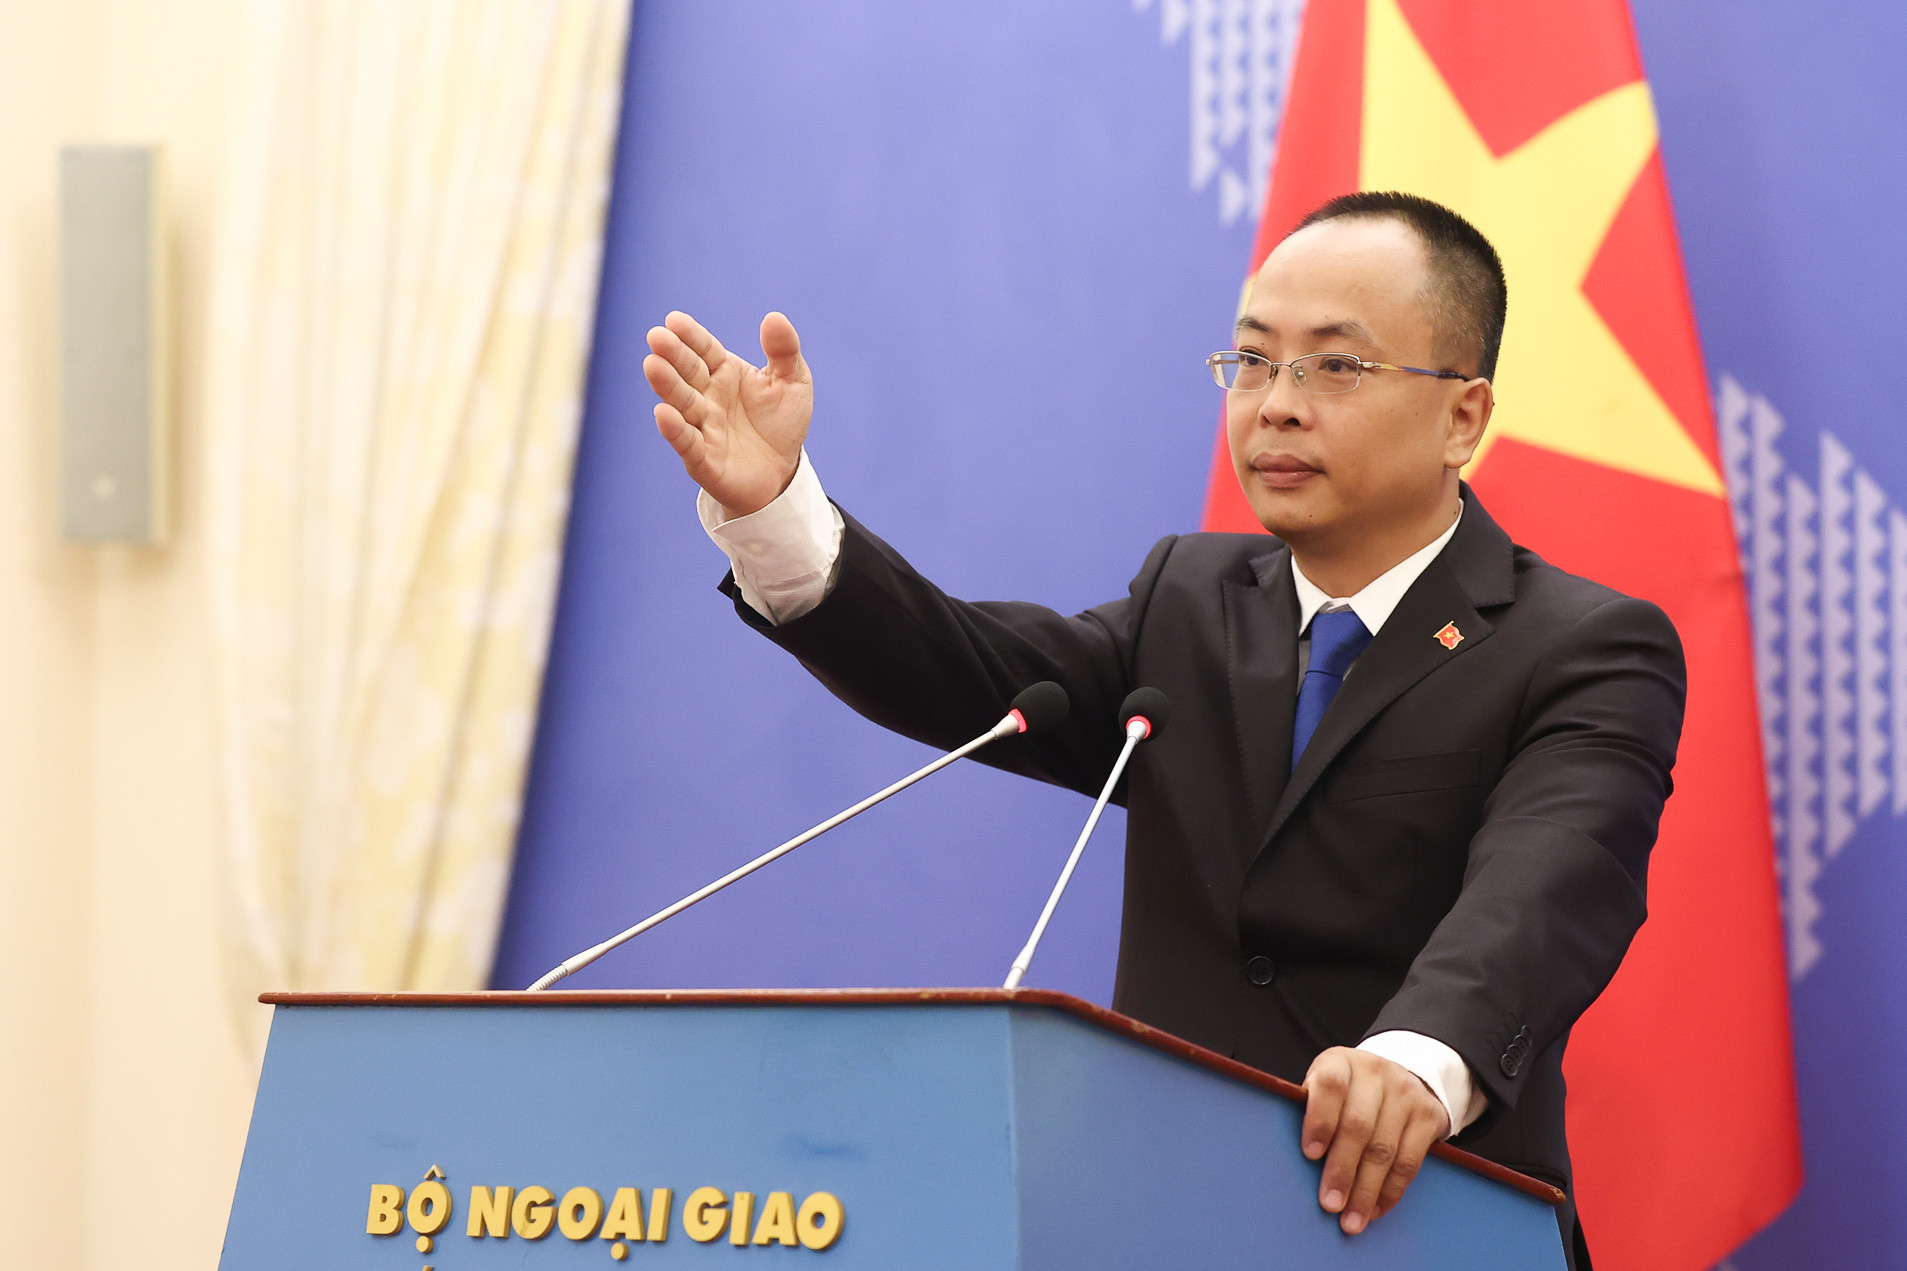 Việt Nam kiên quyết phản đối hoạt động vi phạm chủ quyền với quần đảo Hoàng Sa